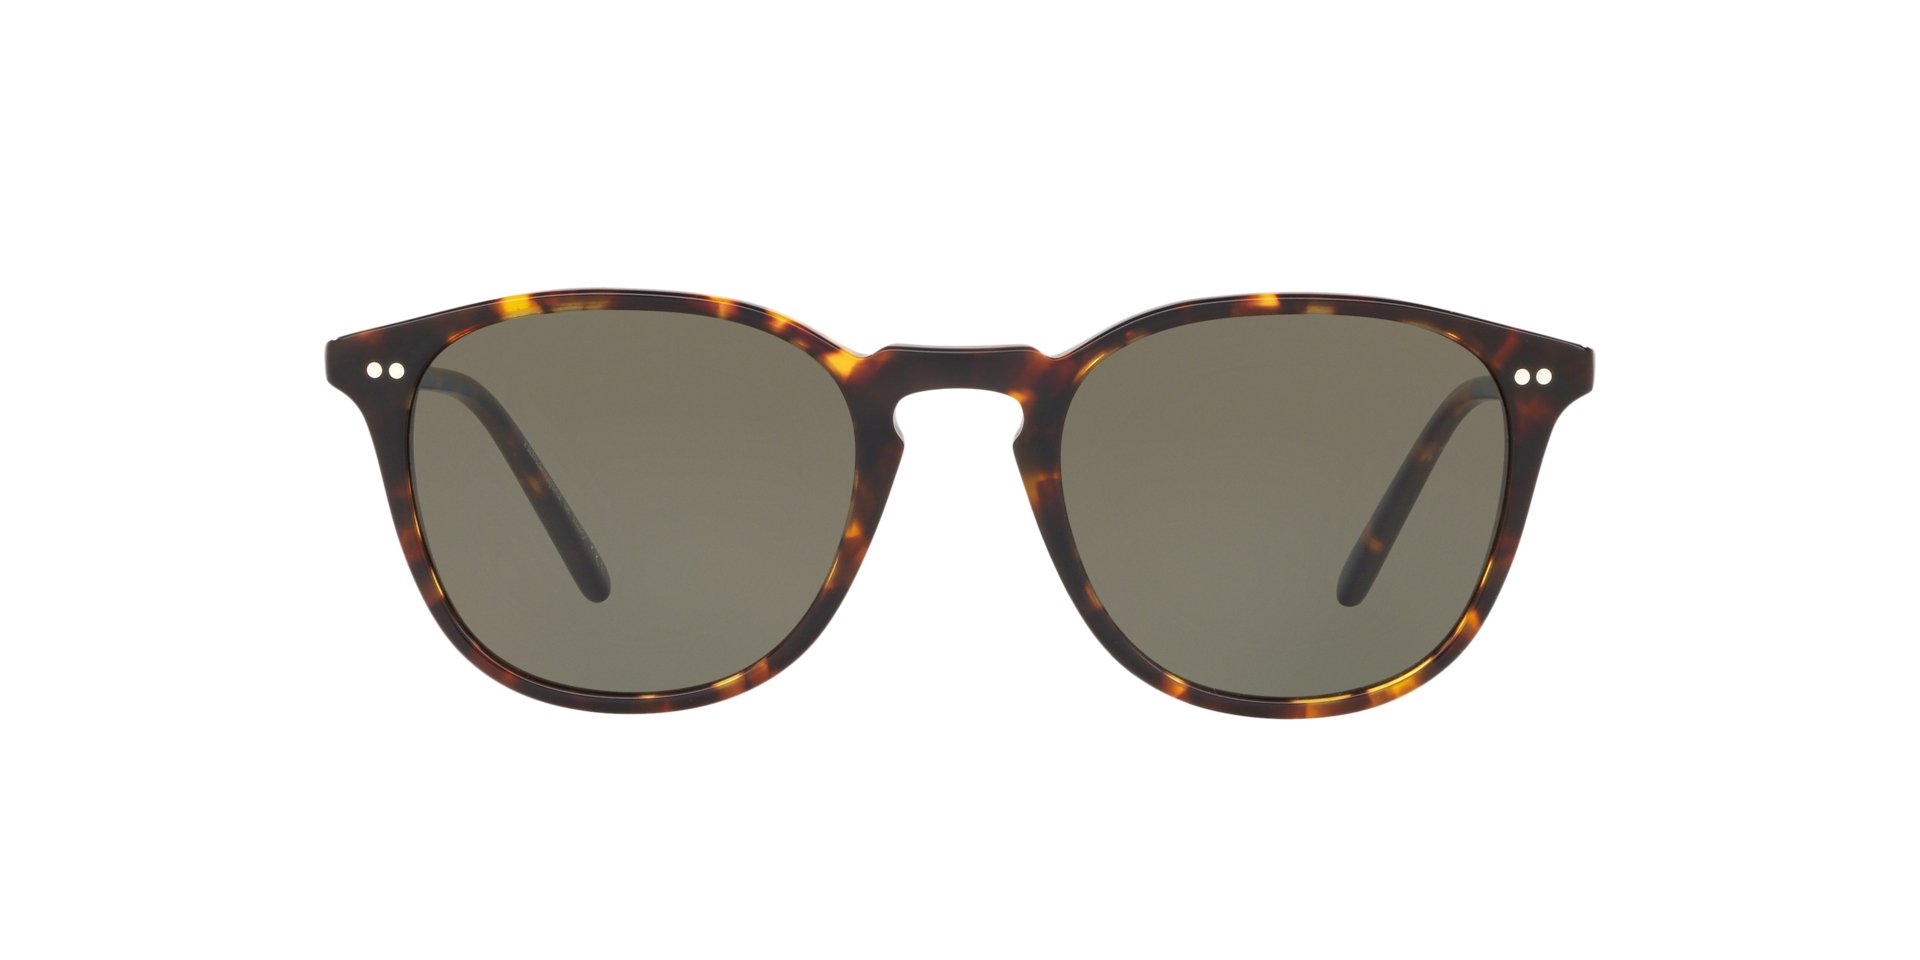 Sunglasses: Oval Sunglasses, acetate & imitation pearls — Fashion